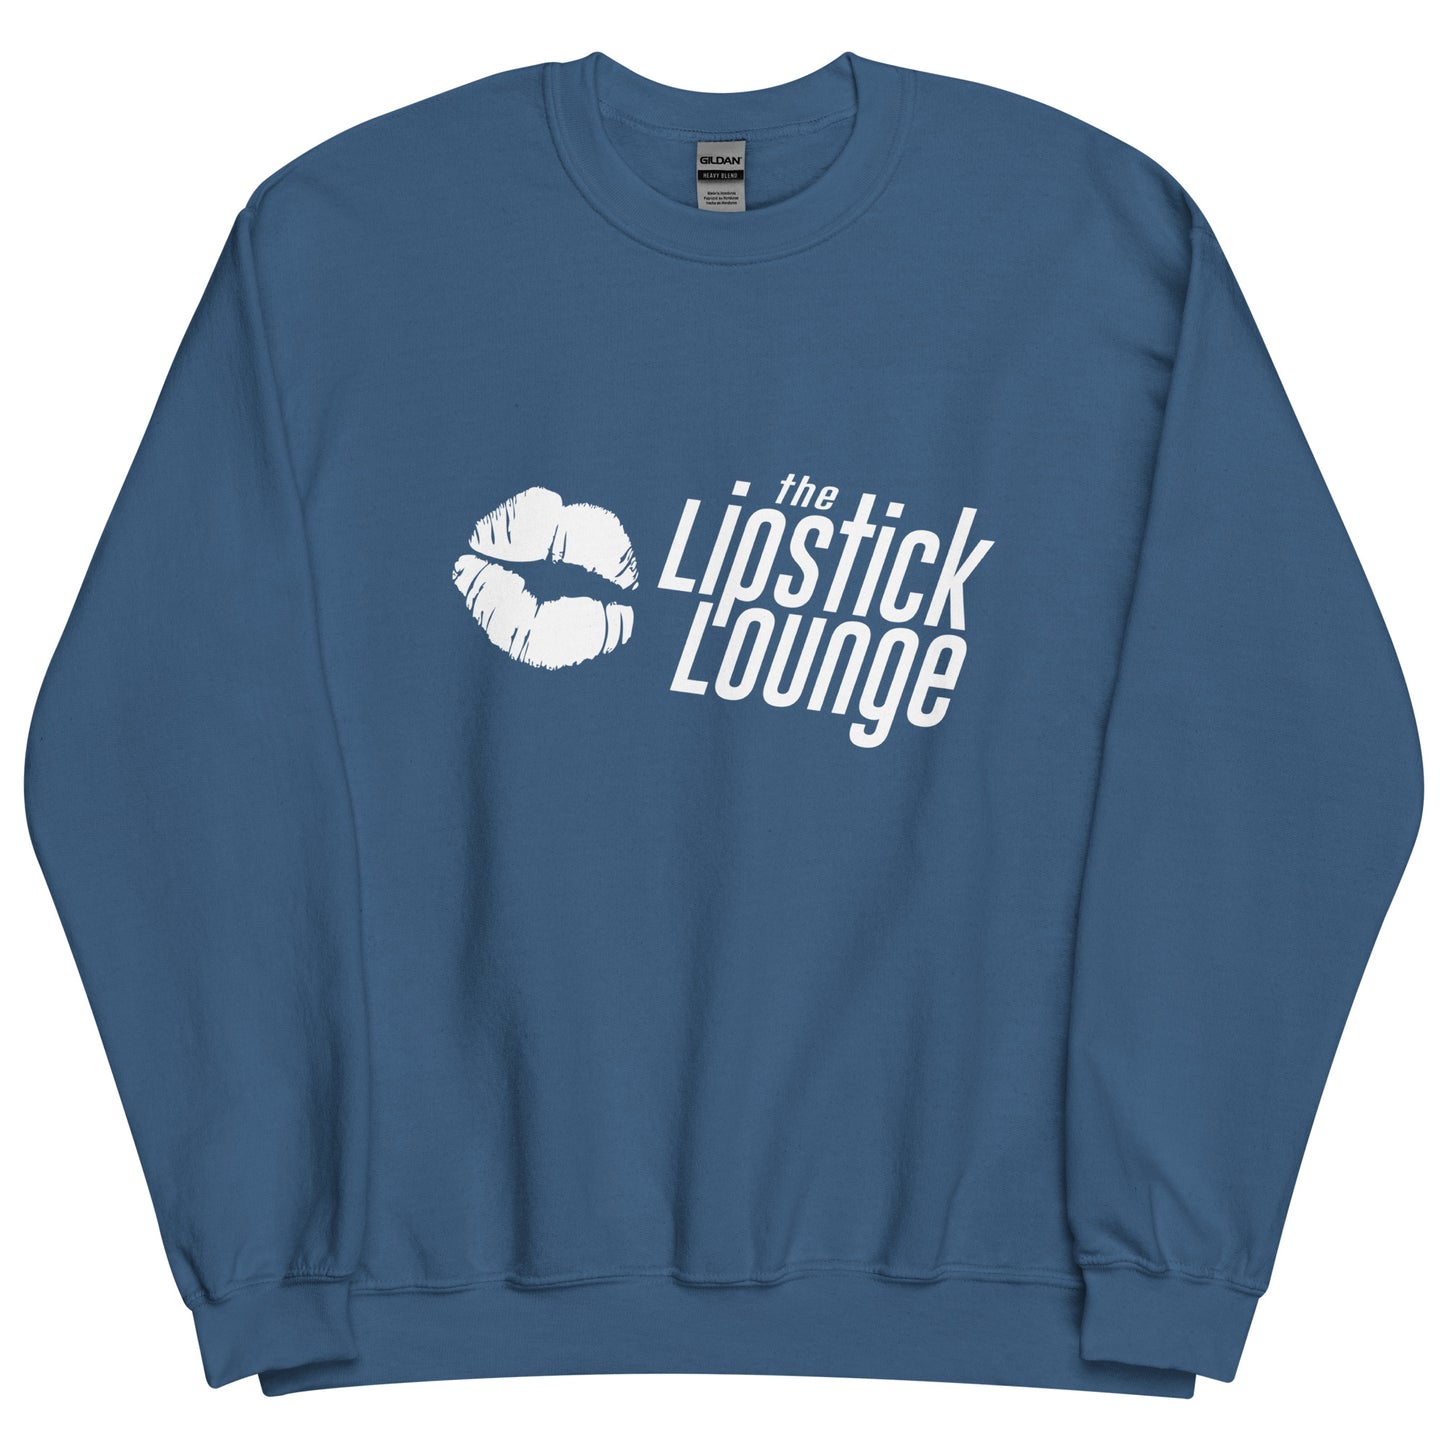 Lipstick Lounge White/Black Logo Unisex Sweatshirt